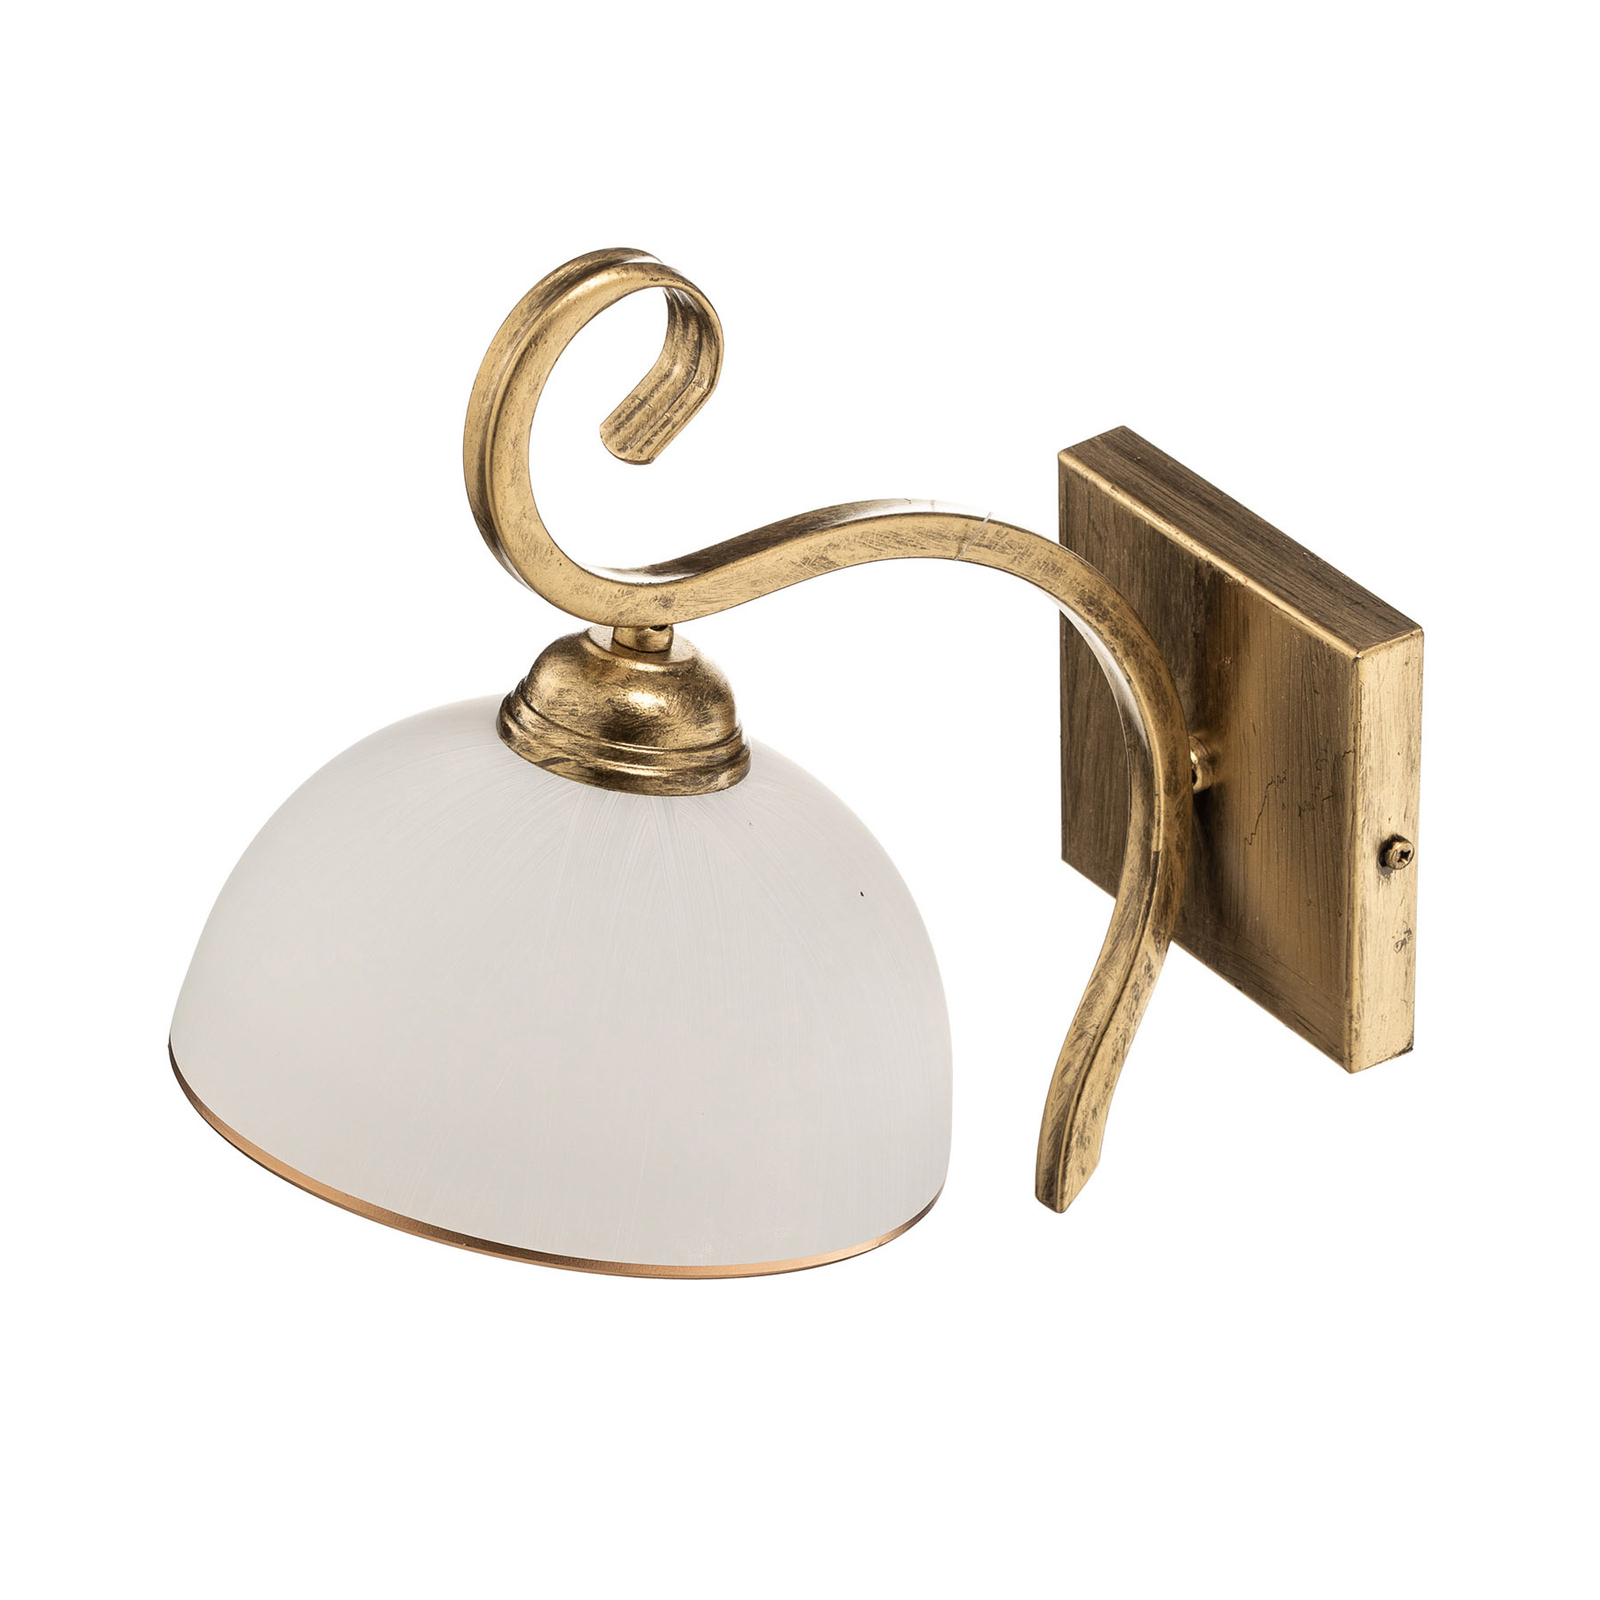 Vegglampe Wivara K1 i klassisk design, gull